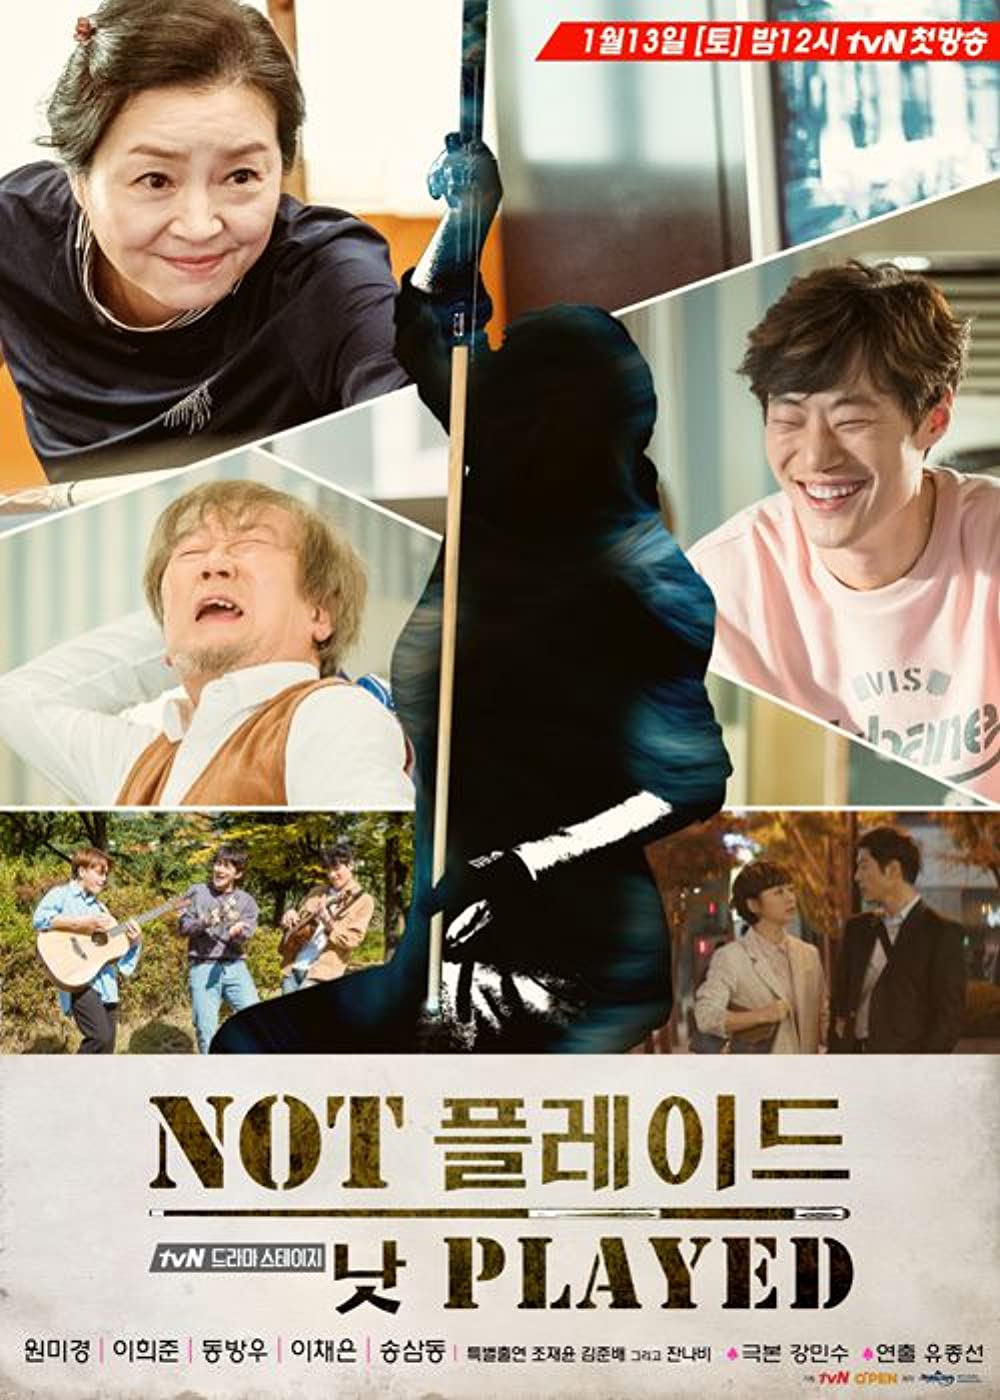 5 Drama Korea kisahkan kehidupan orang tua, penuh pesan moral